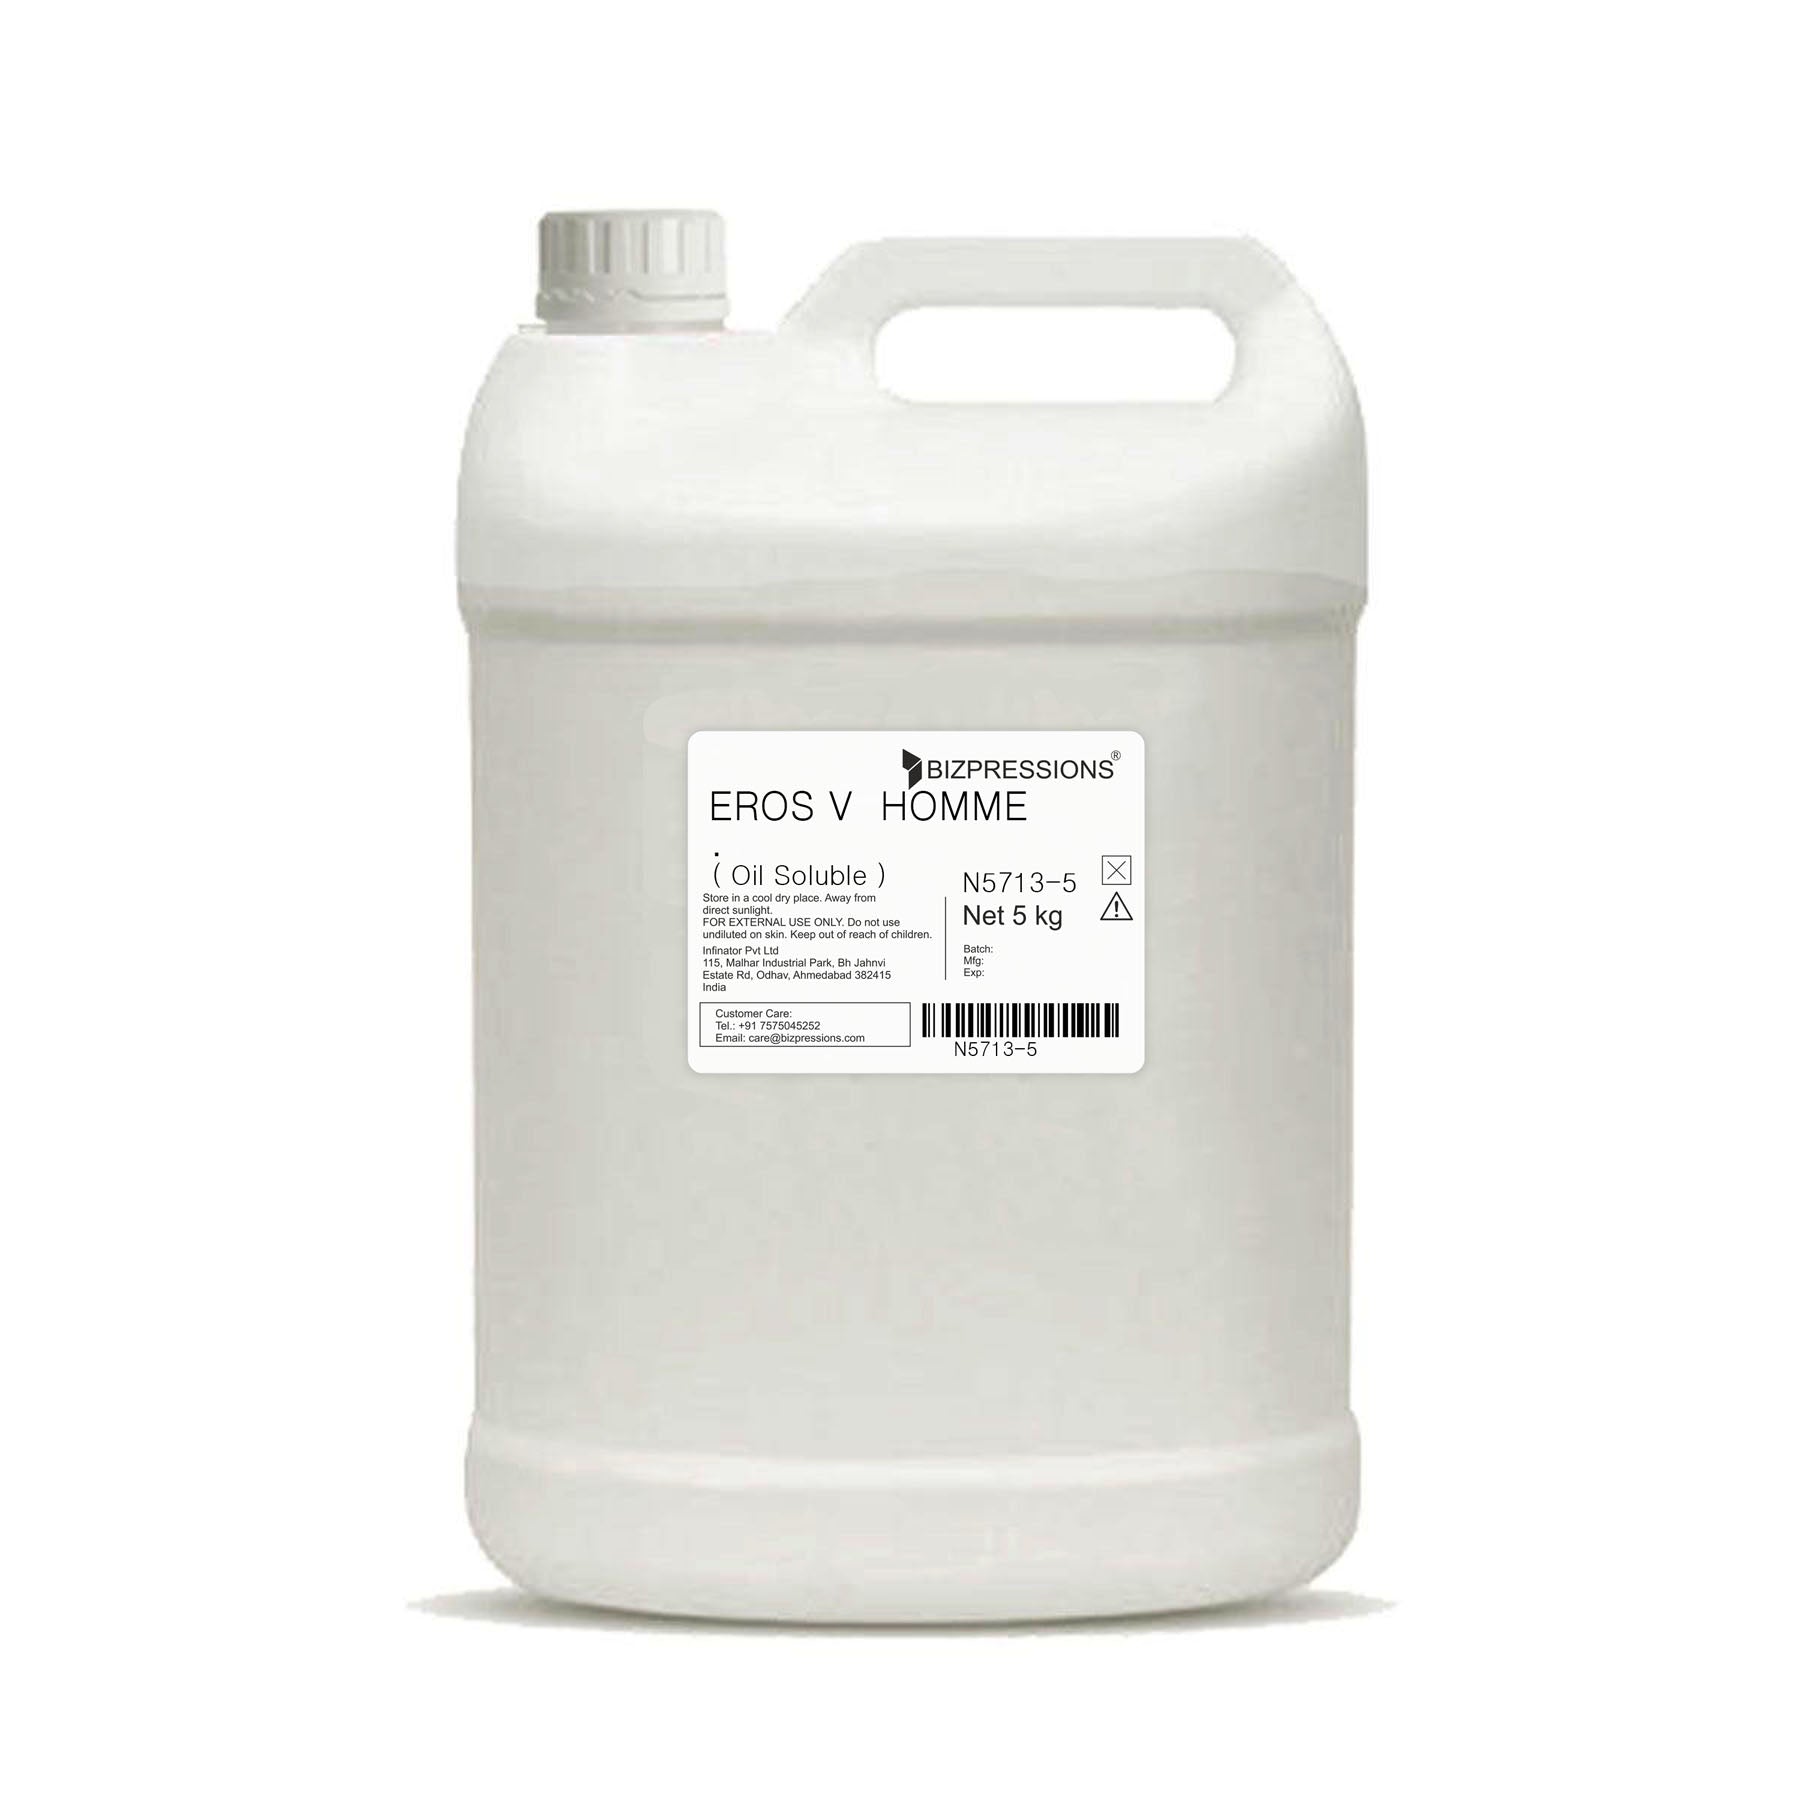 EROS V HOMME - Fragrance ( Oil Soluble ) - 5 kg